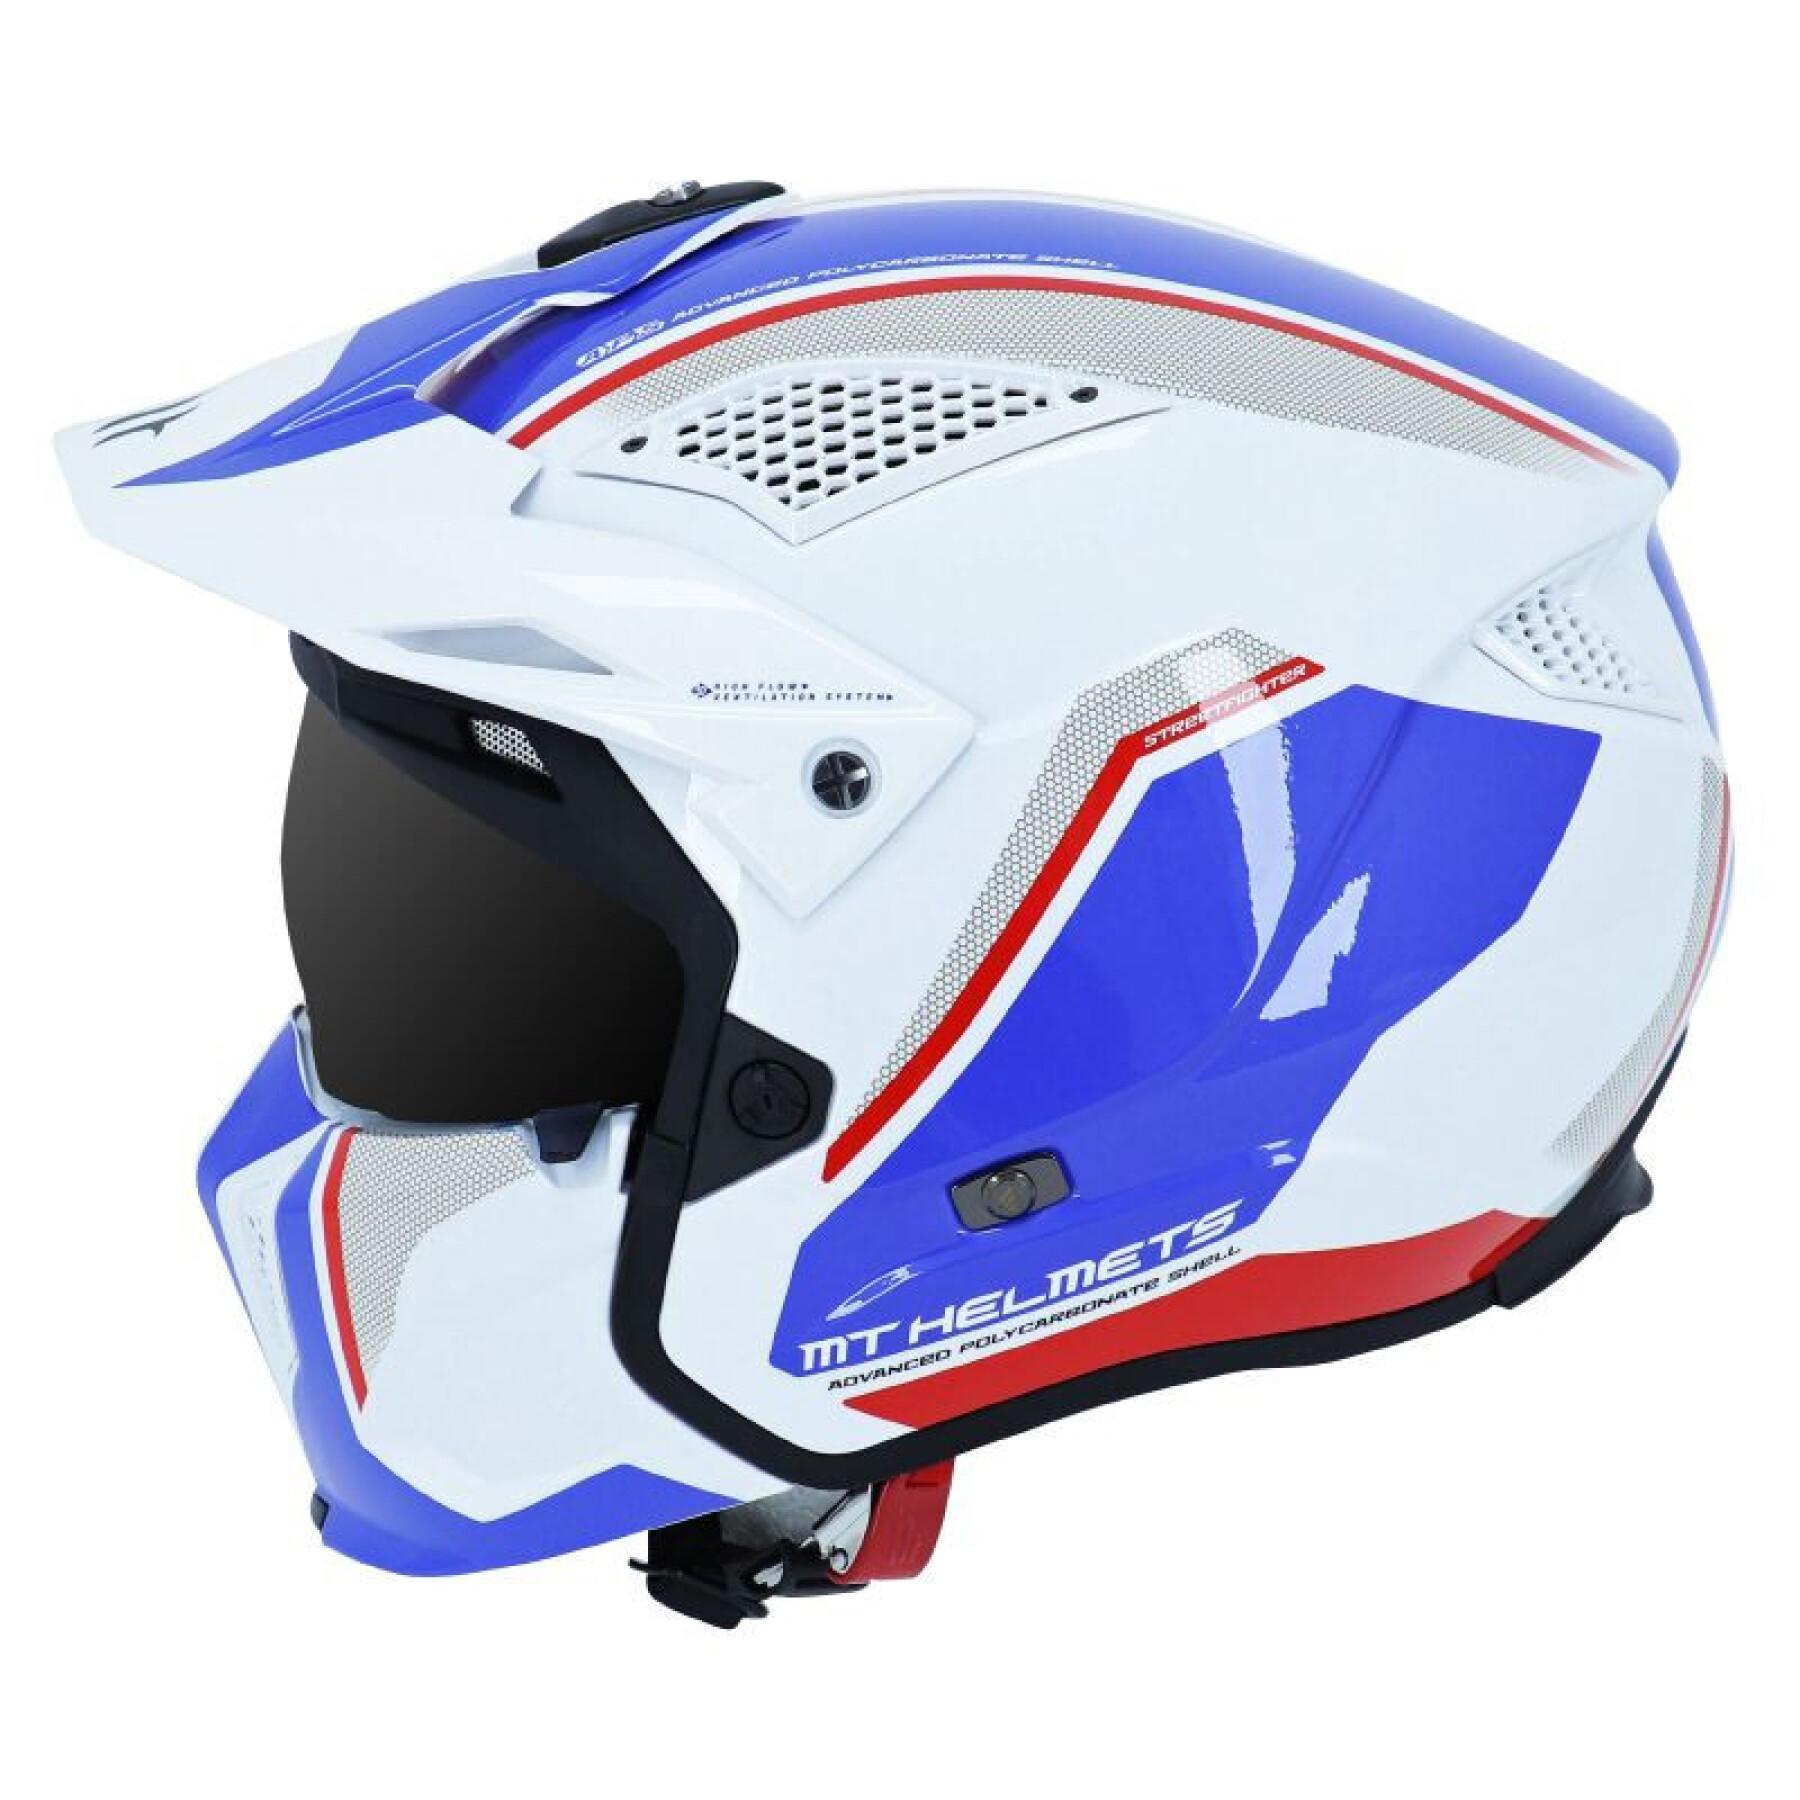 Ciemny kask jednoskładnikowy z odpinanym paskiem pod brodę MT Helmets MT STREETFIGHTER SV SKULL (dostarczany z dodatkową niebieską osłoną)